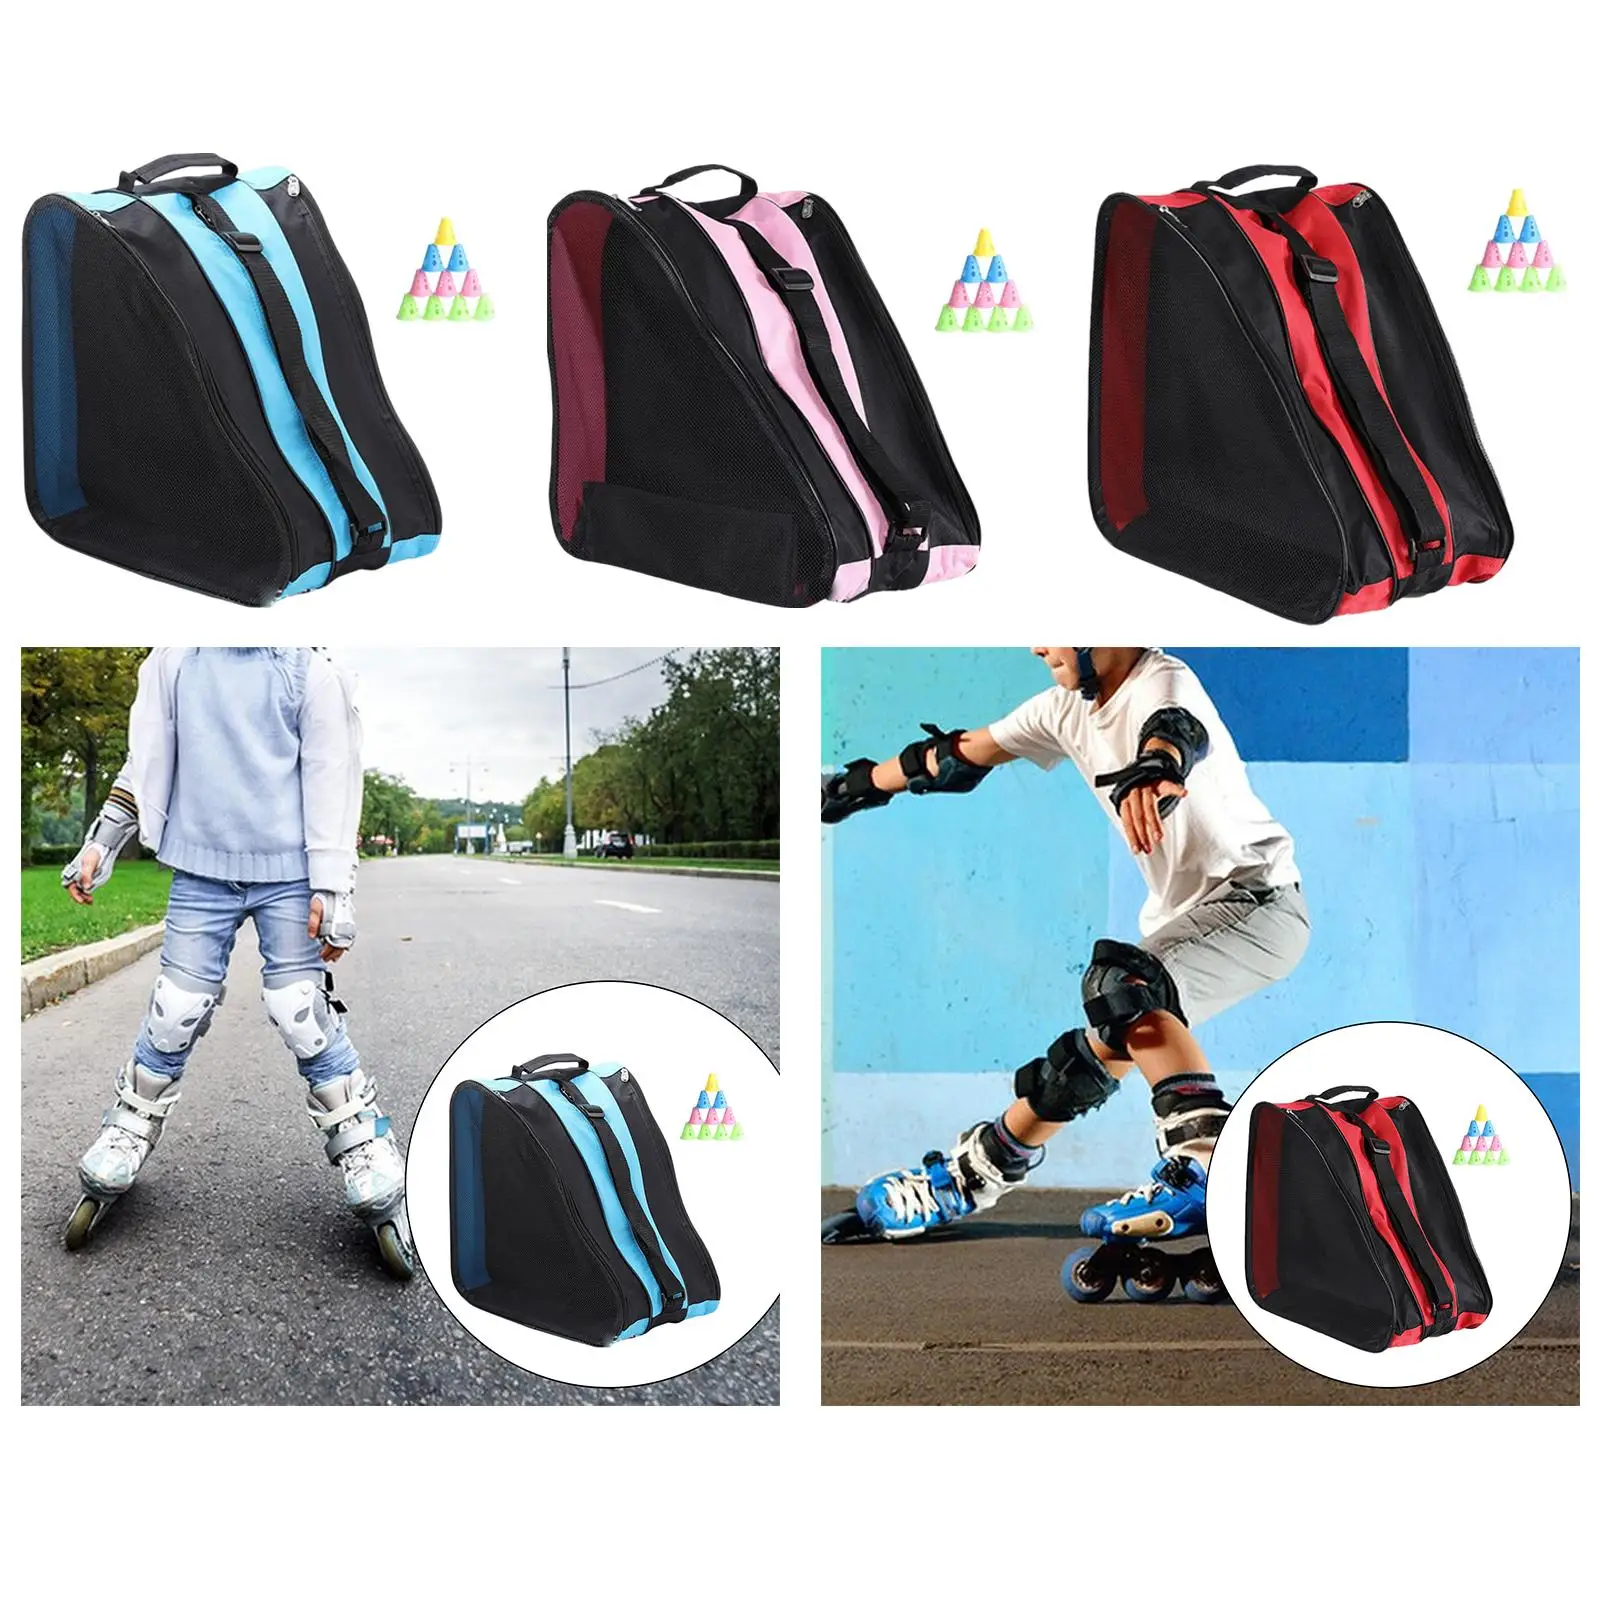 Roller Skate Bag Breathable Ice Skates Bag Protective Gear Skate Carry Case Skating Shoes Storage Bag for Knee Pads